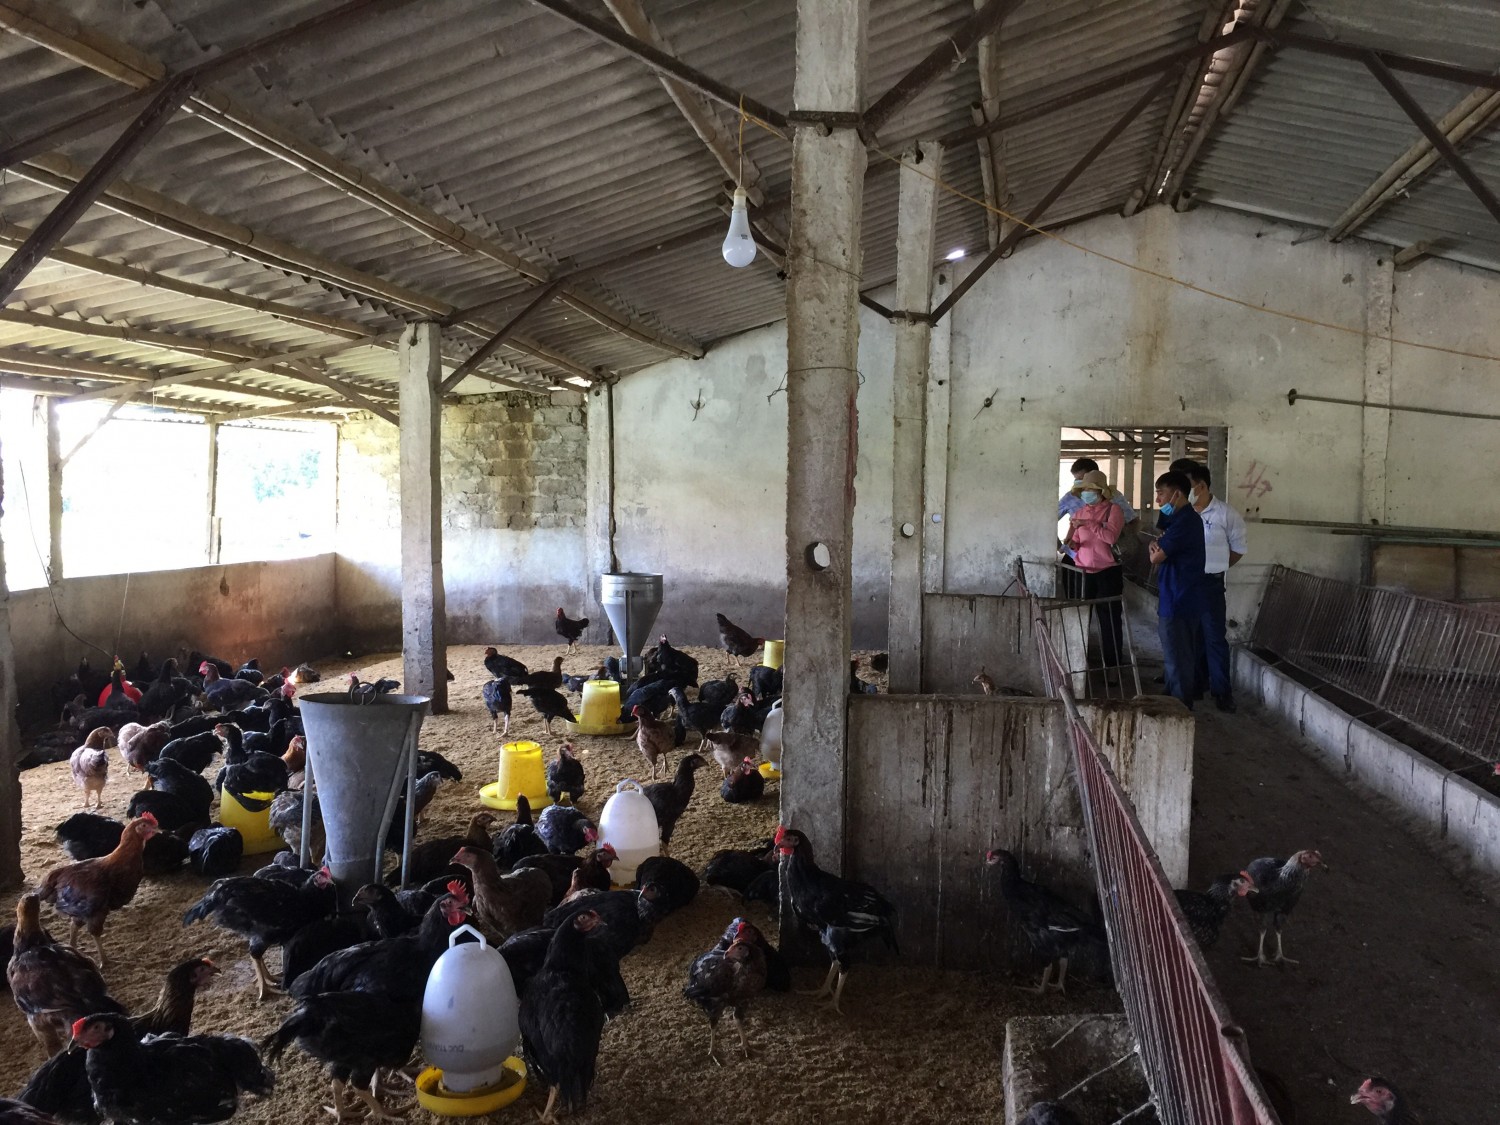 Cán bộ Tỉnh, huyện, xã Hùng Tiển kiểm tra mô hình chăn nuôi gà an toàn sinh học sử dụng chế phẩm Probiotic tại hộ chi Nguyễn Thị Hà xã Hùng Tiến, huyện Nam Đàn Nghệ An.